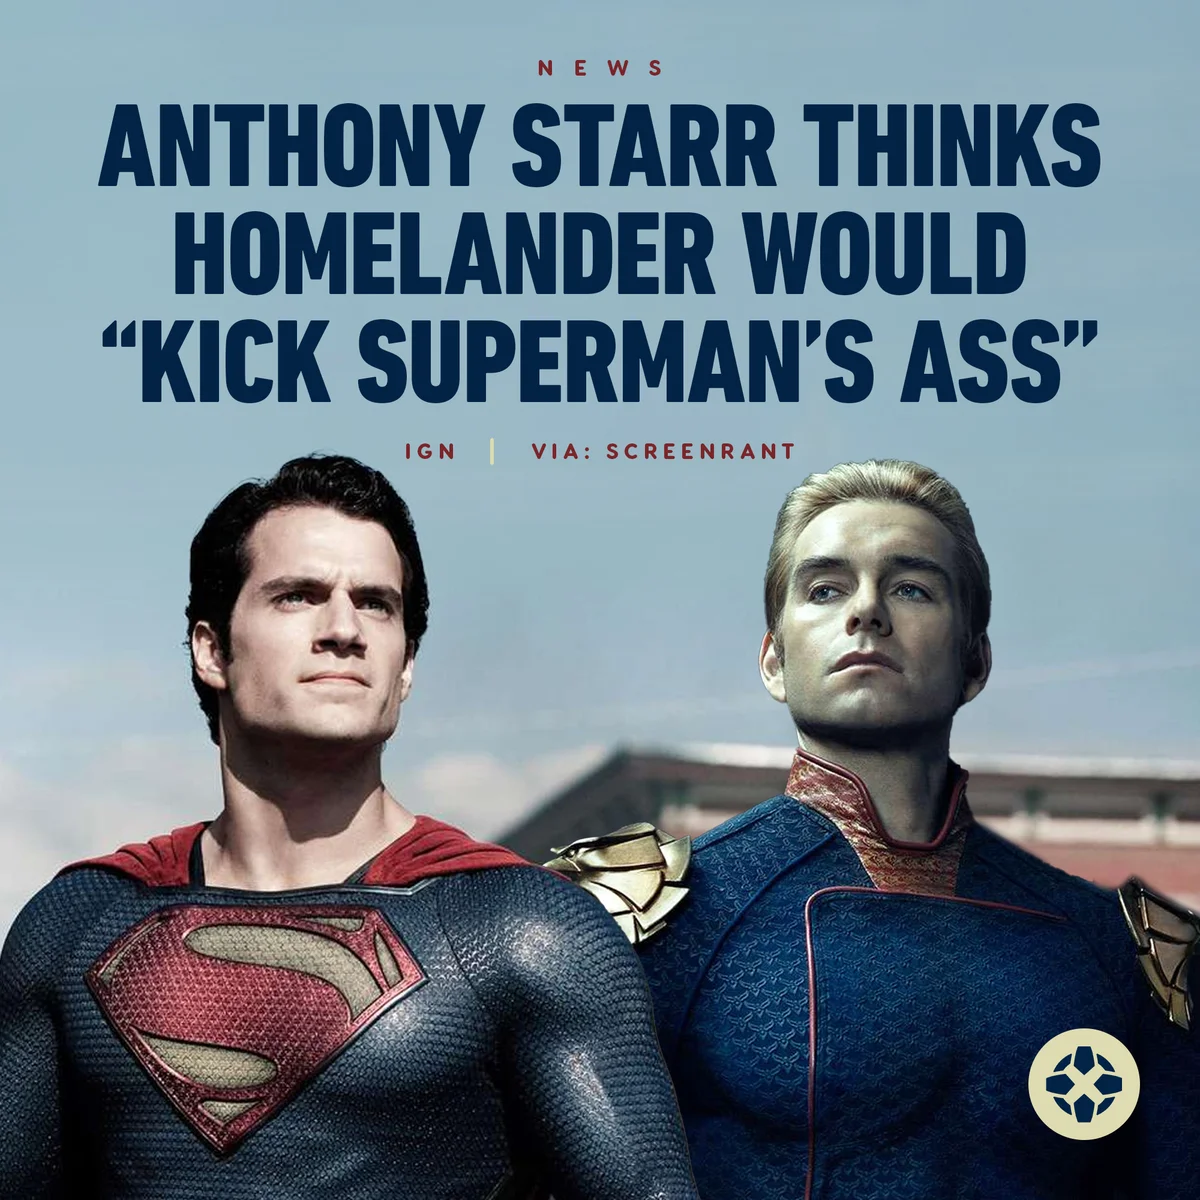 Звезда «Пацанов» Энтони Старр уверен в победе Хоумлендера над Суперменом - фото 1